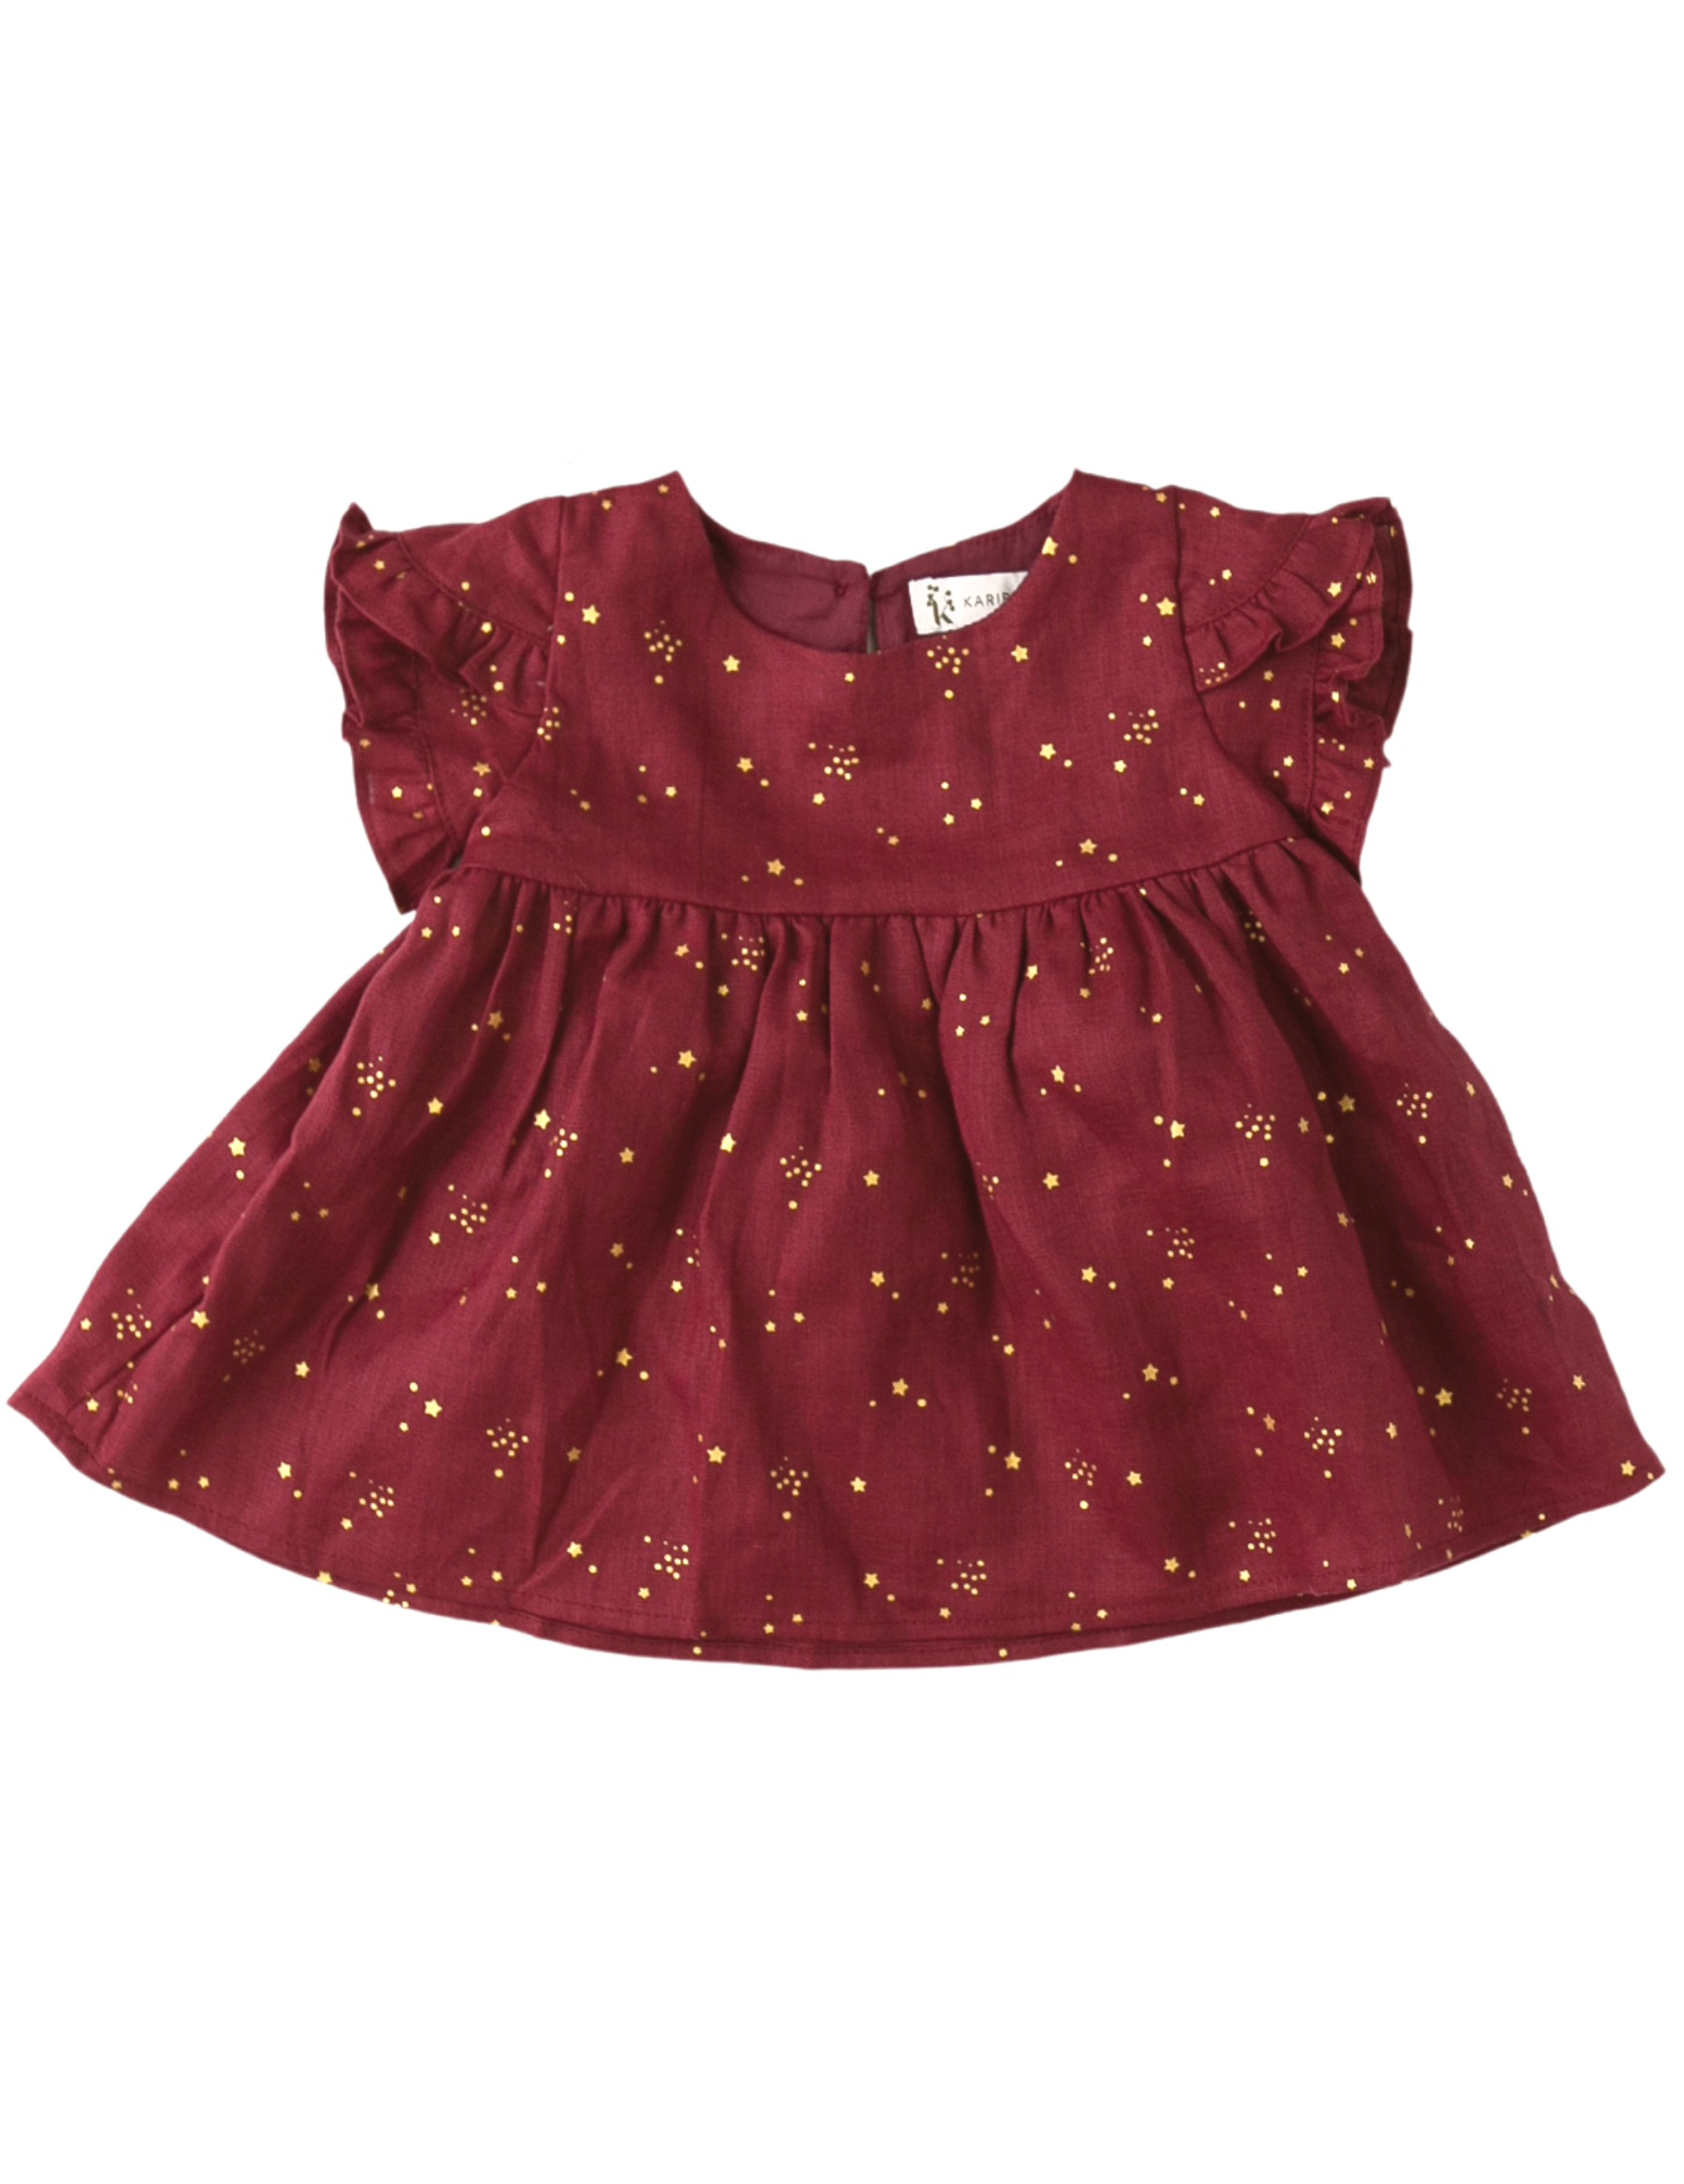 Baby Clothes & Kids Clothes – Newbie.com